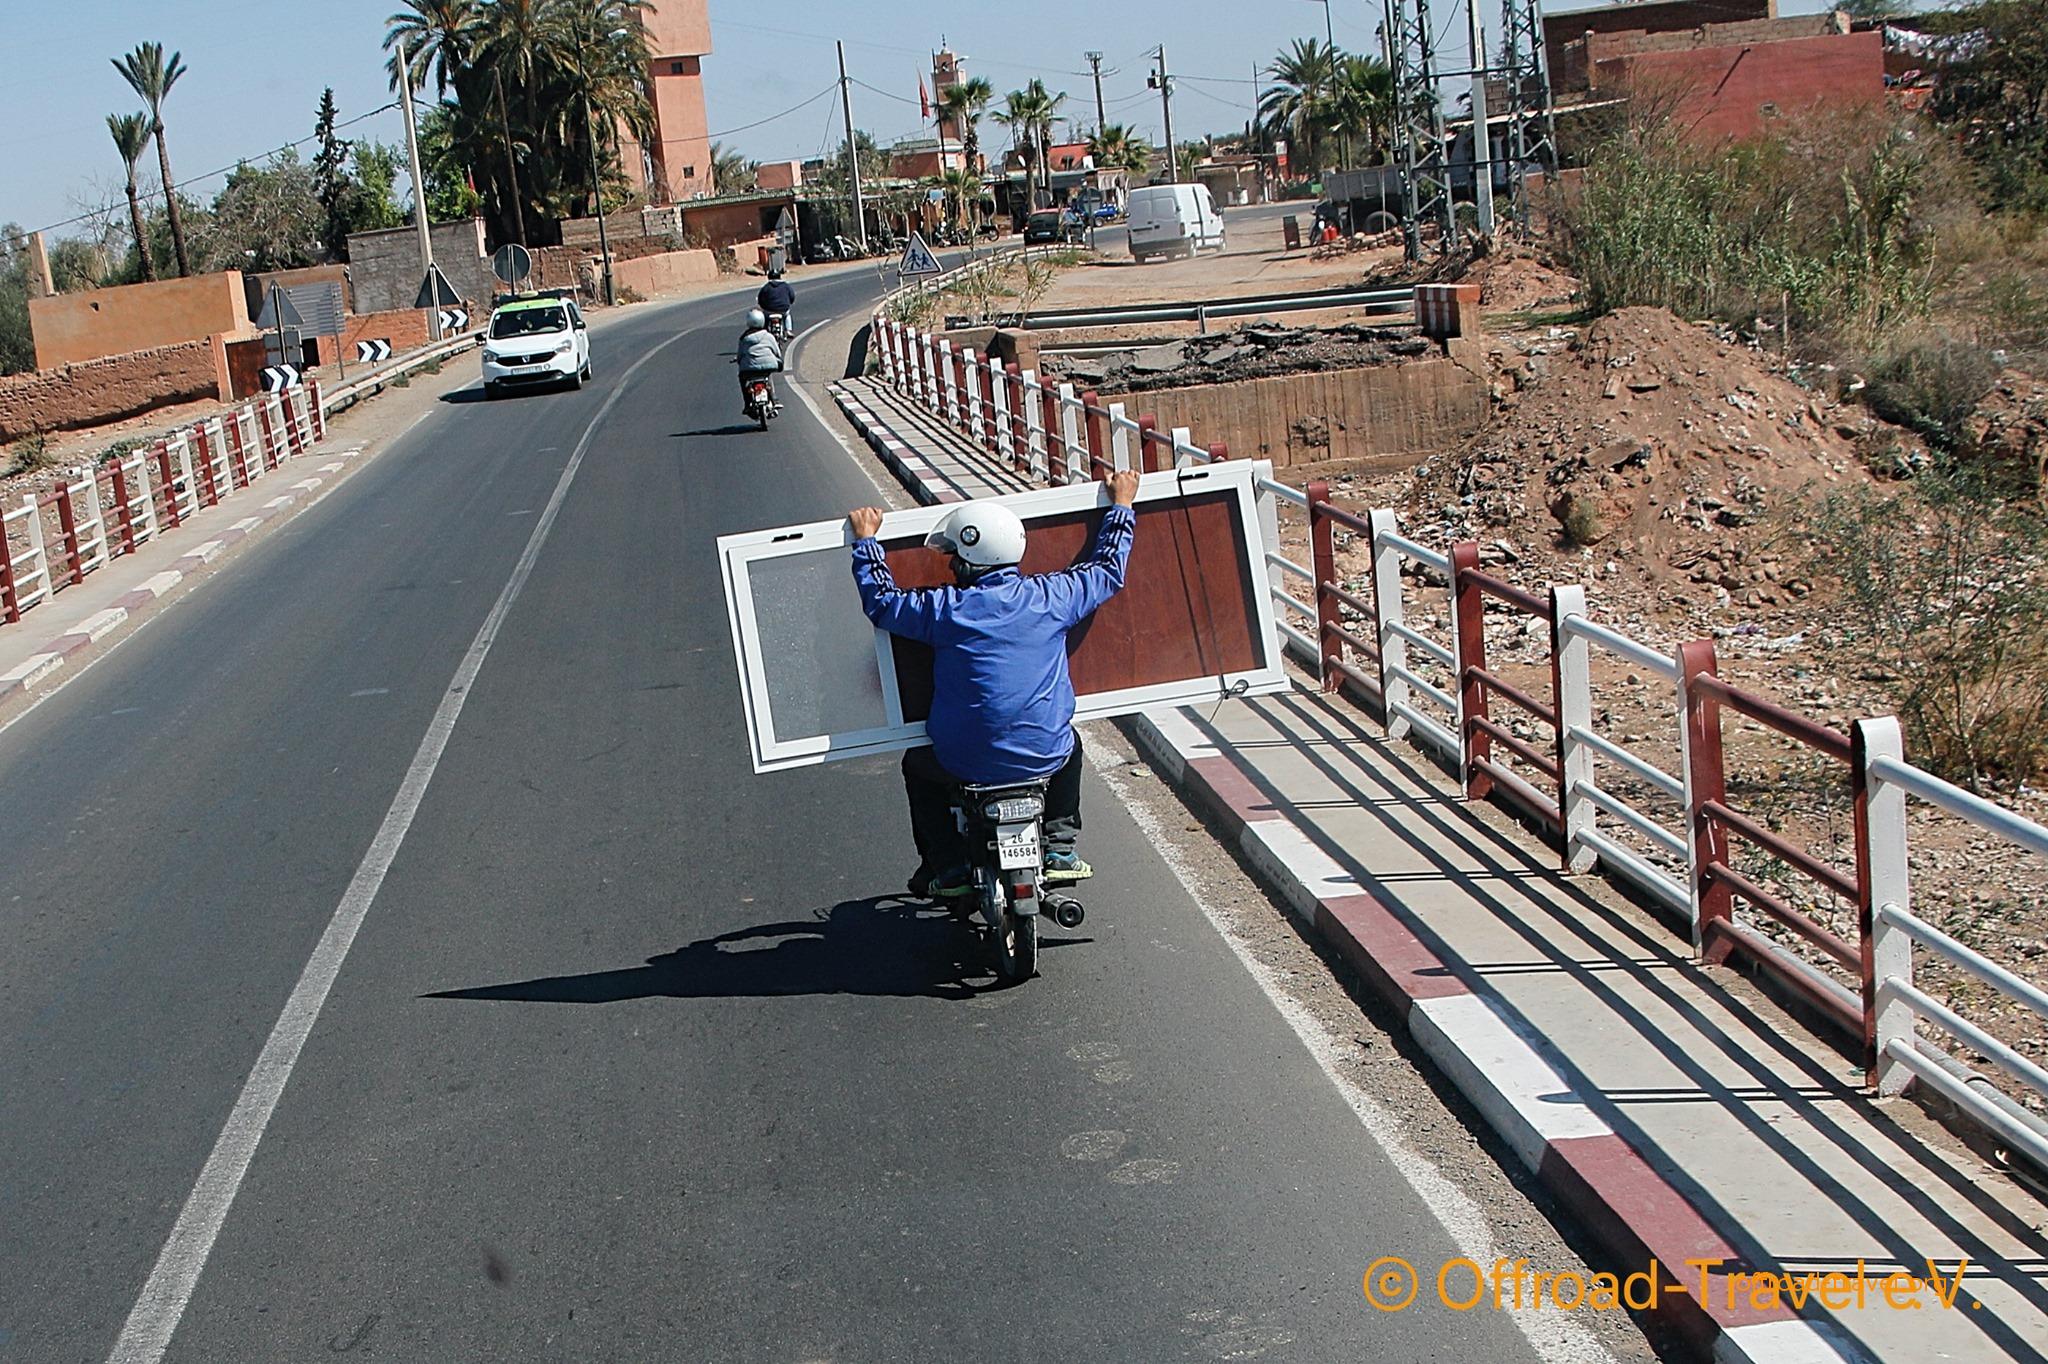 Auf den Straßen von Marokko. Eine Person fährt das Moped und der Mitfahrer hält eine Tür, die so transportiert wurde.